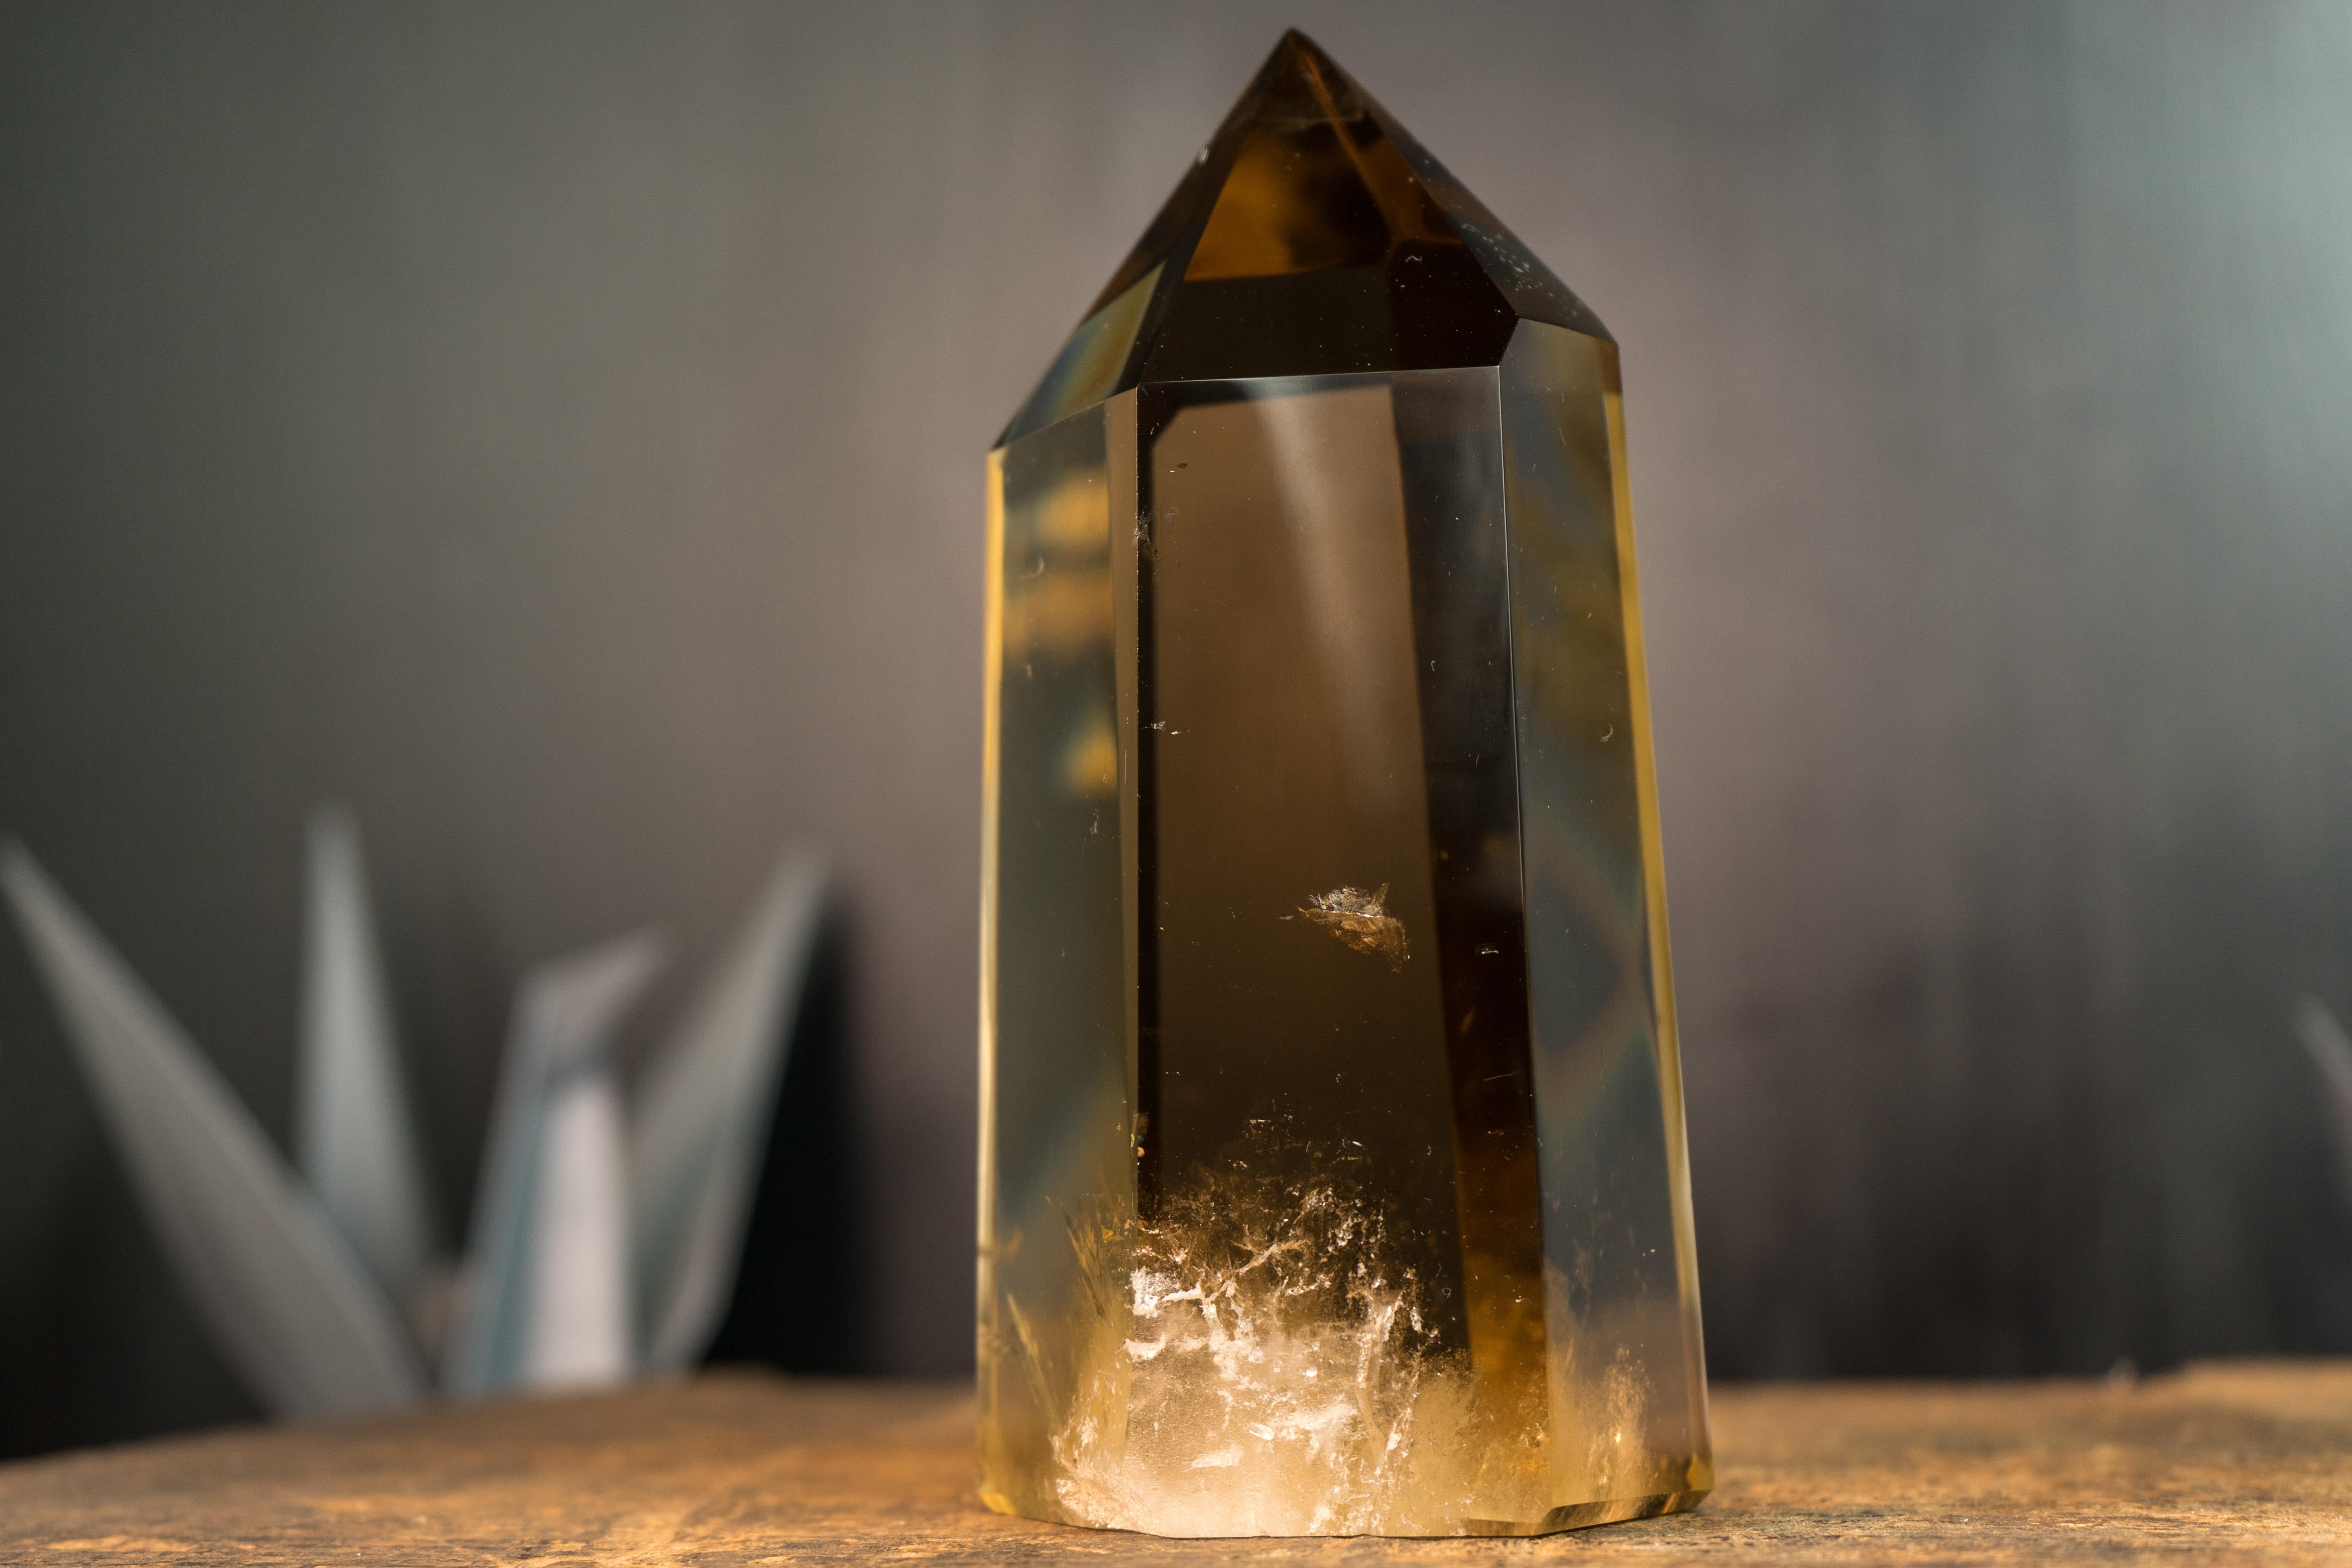 Brazilian Epic Natural Citrine Crystal Obelisk with Water Clear Deep Golden Orange Quartz For Sale